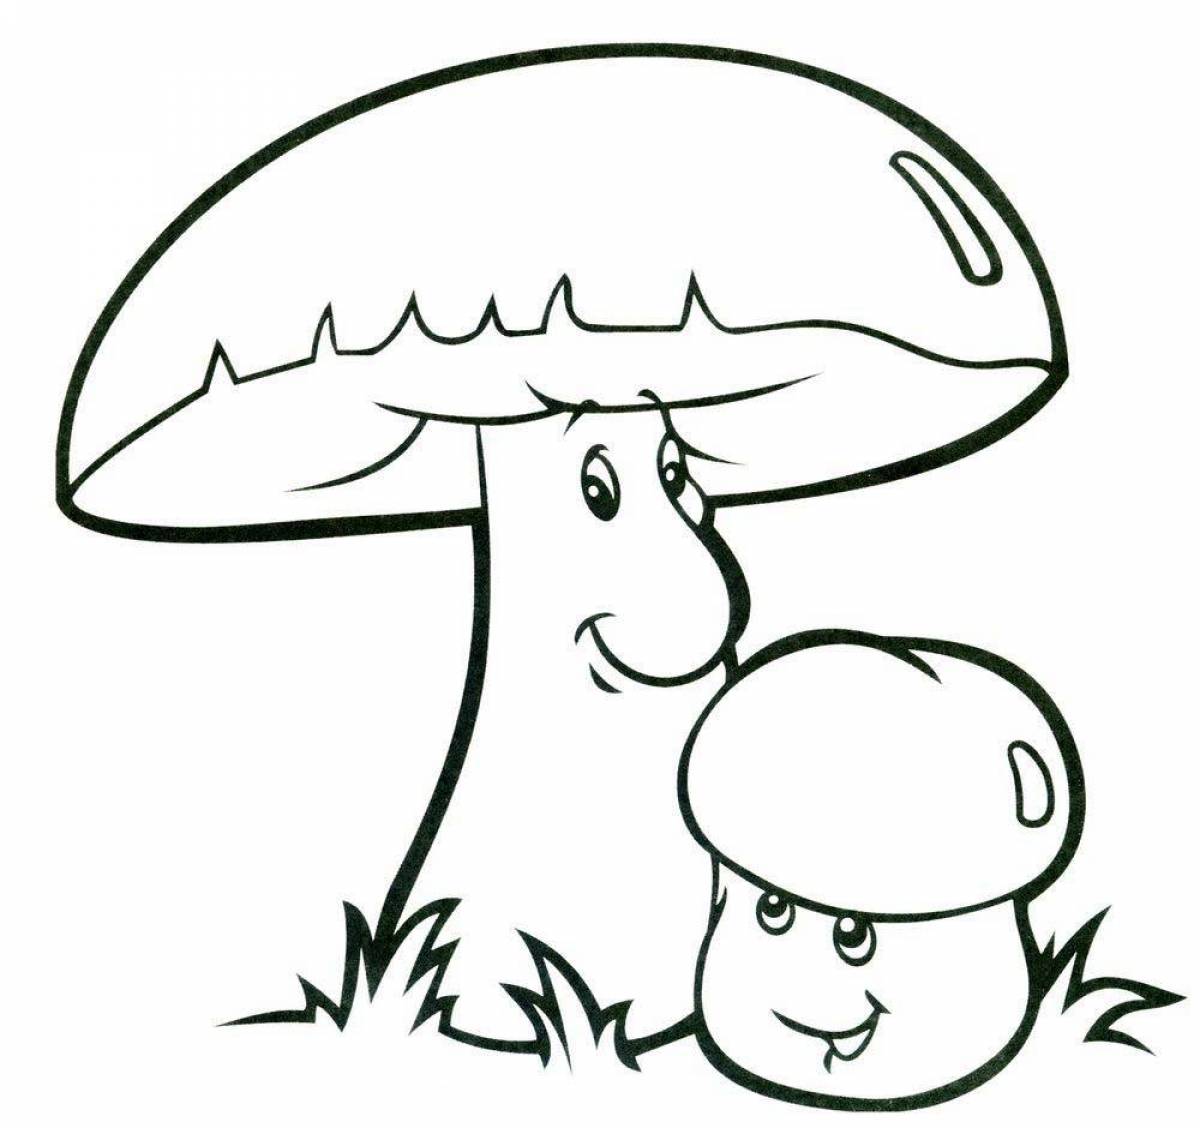 Mushroom #5